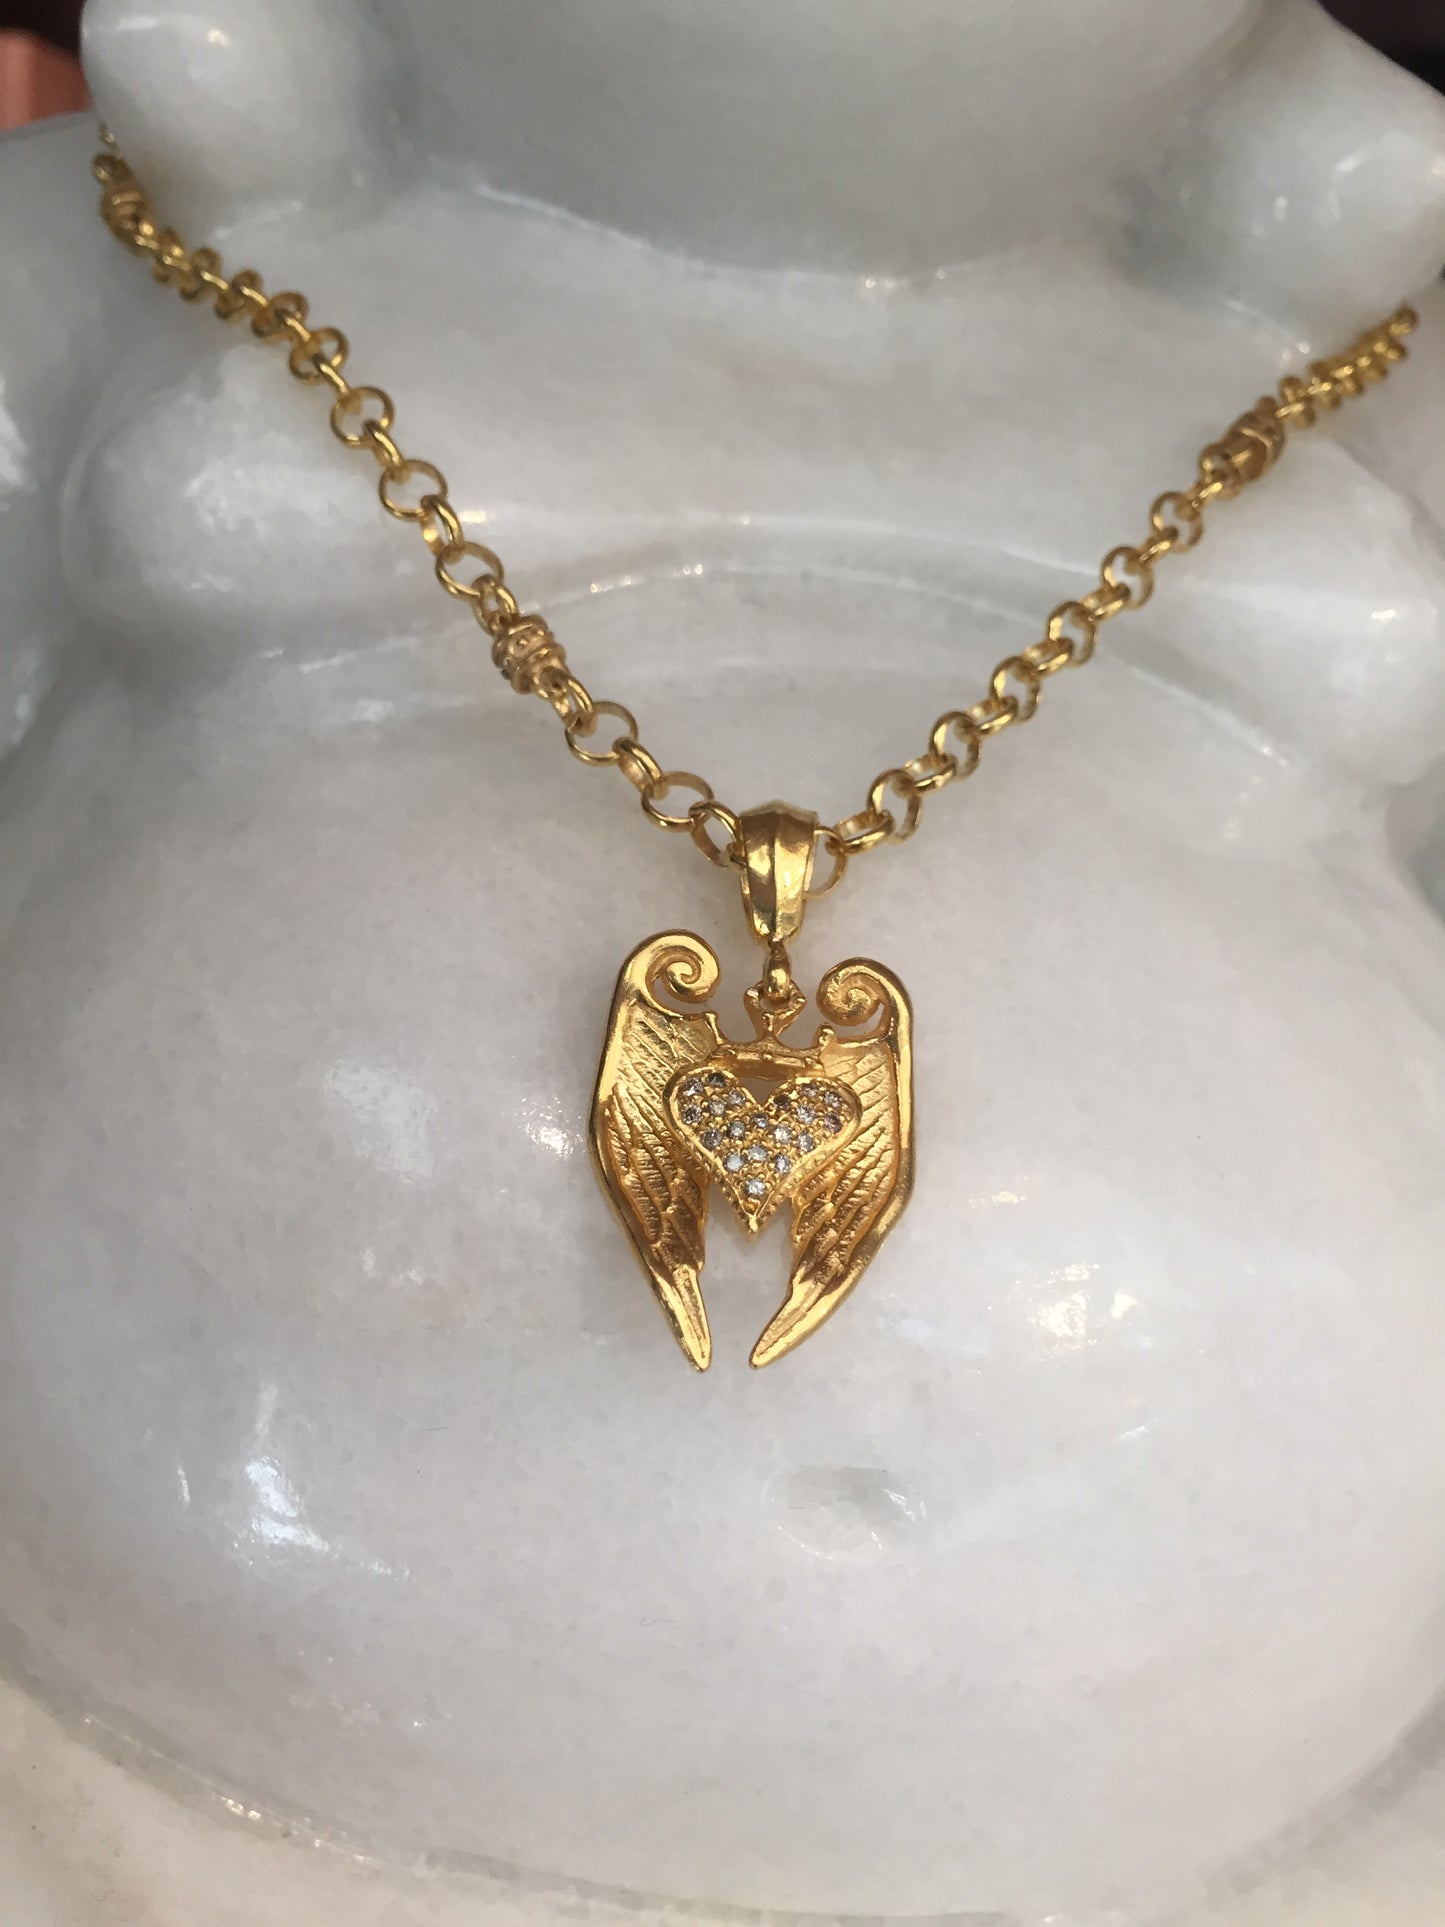 Necklace - Angel Golden Heart & Diamonds by Roman Paul in sterling silver